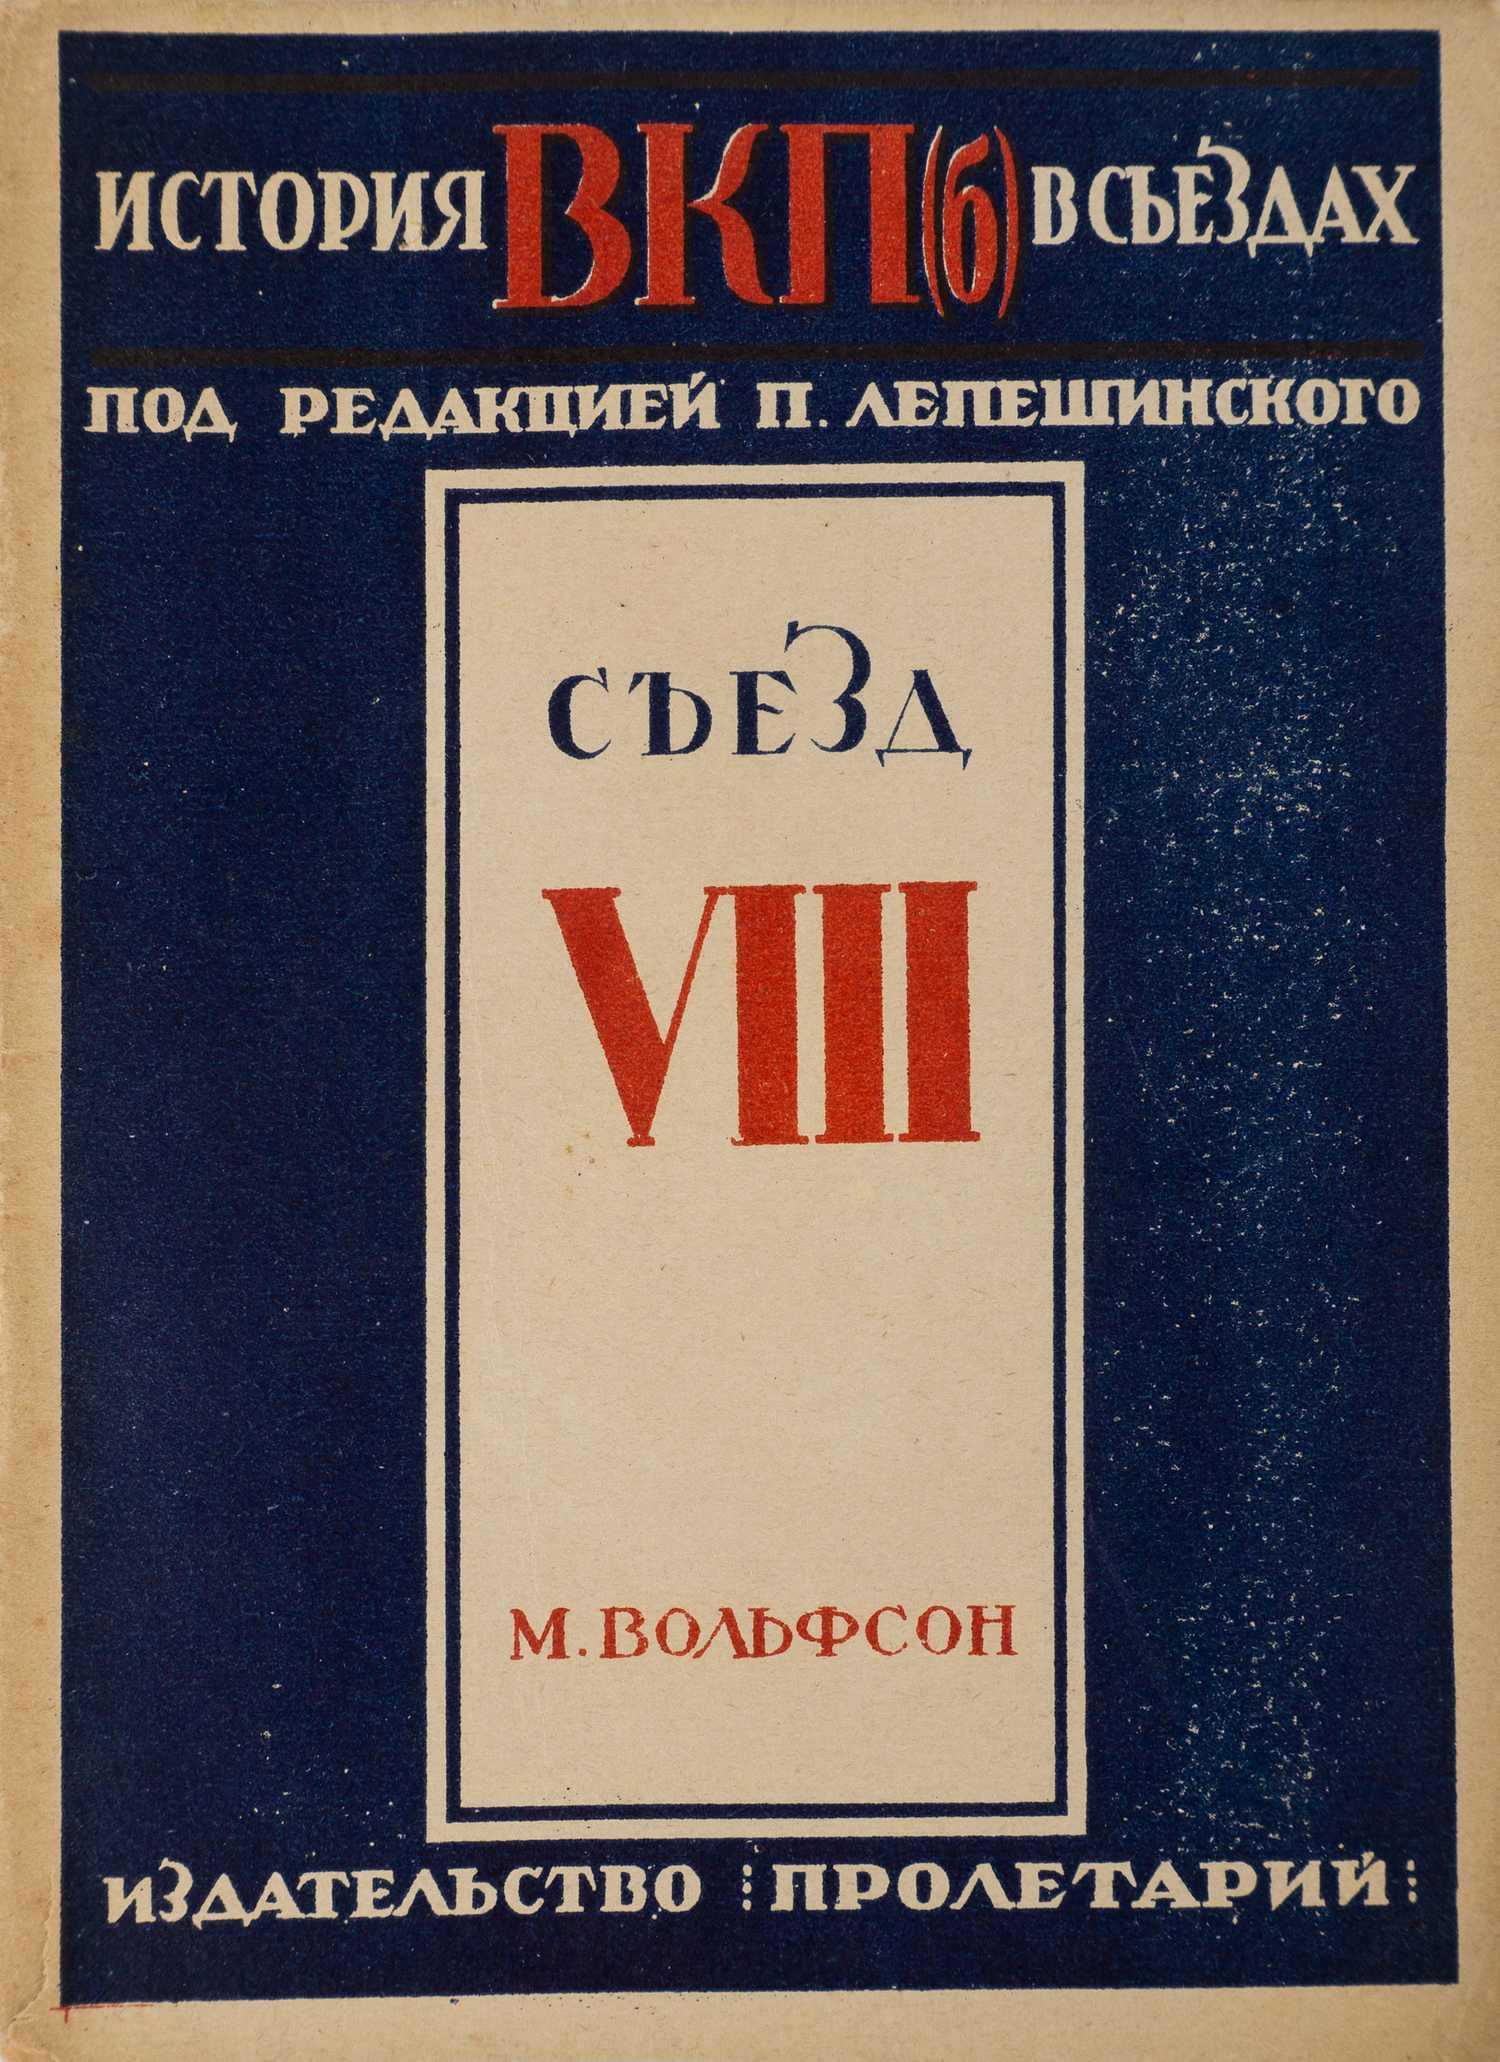 Вольфсон М. Восьмой съезд (М., 1929).